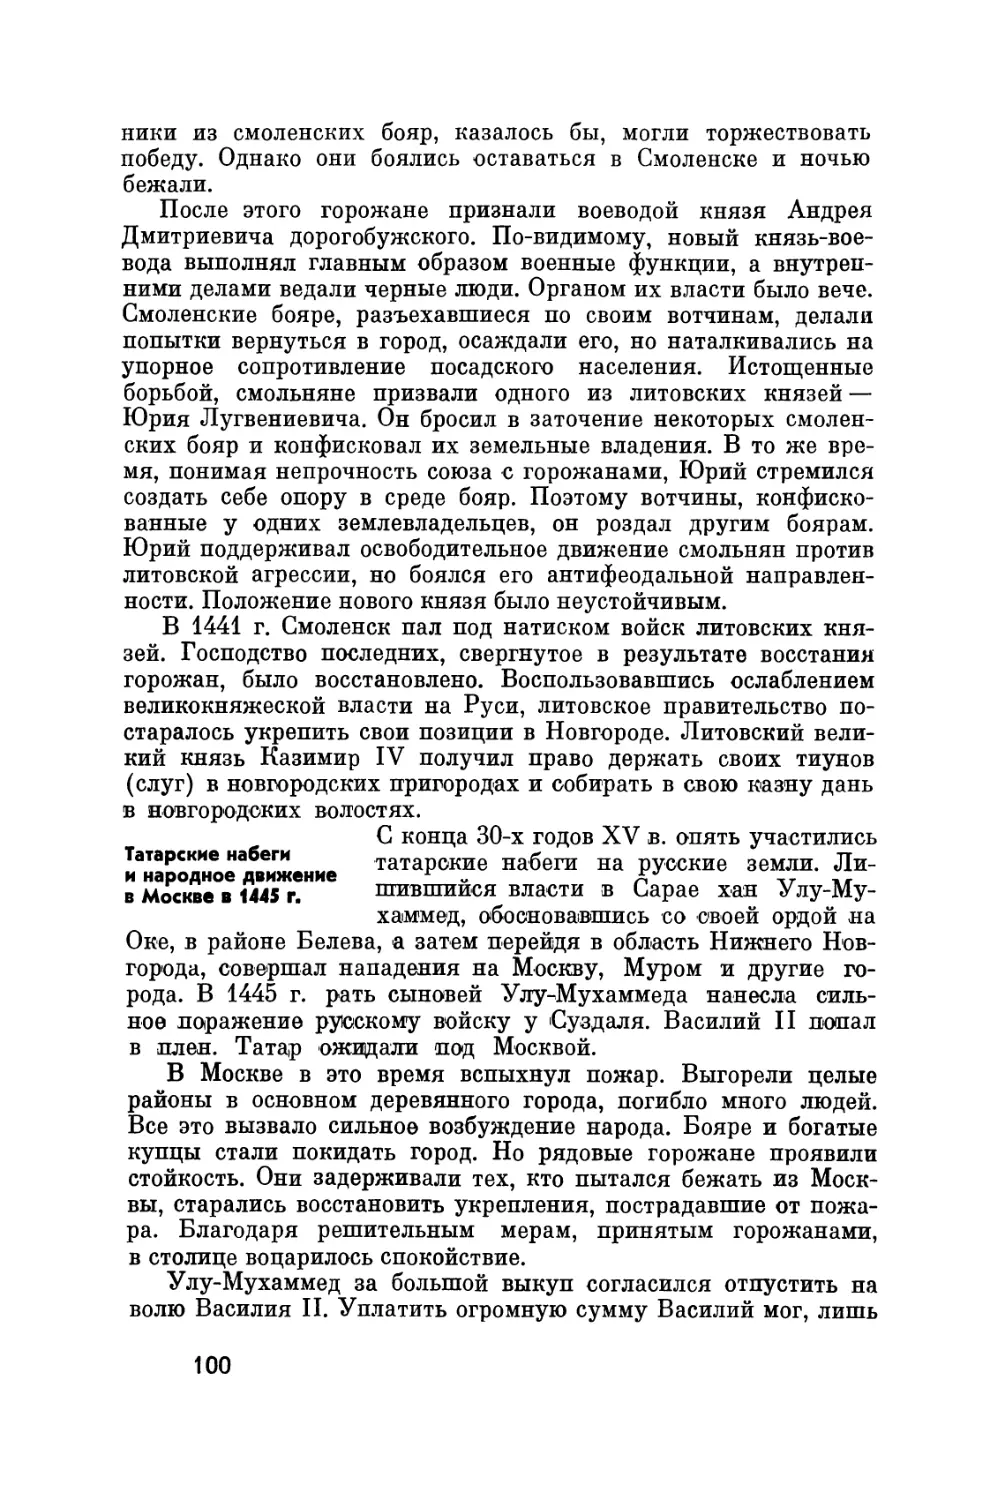 Татарские набеги и народное движение в Москве в 1445 г.